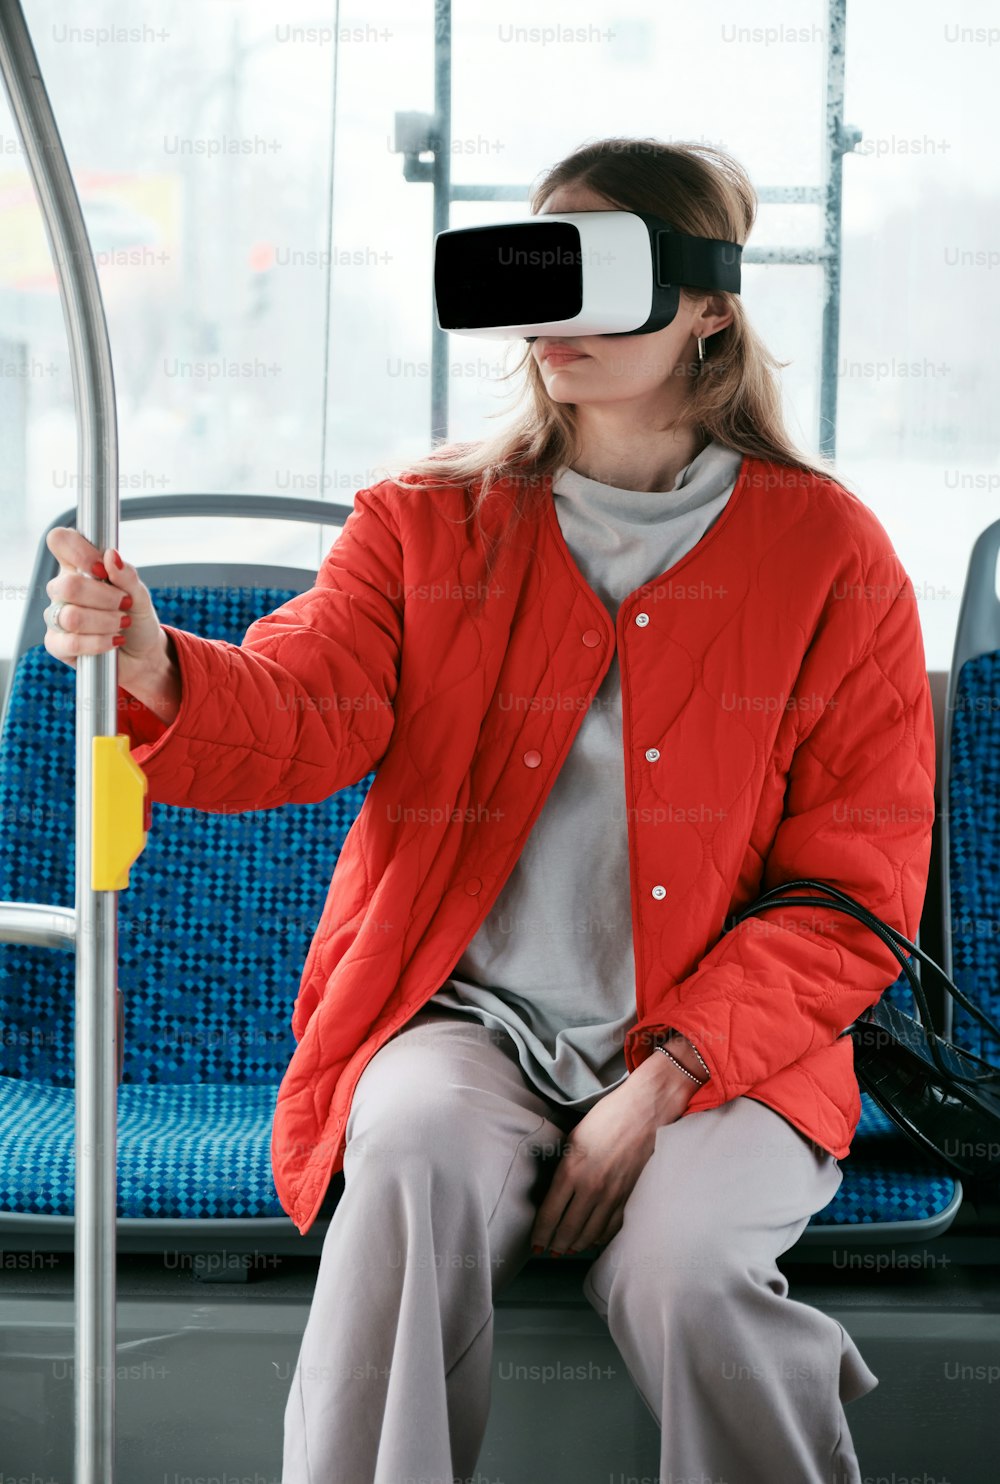 Una mujer sentada en un autobús con un par de gafas virtuales